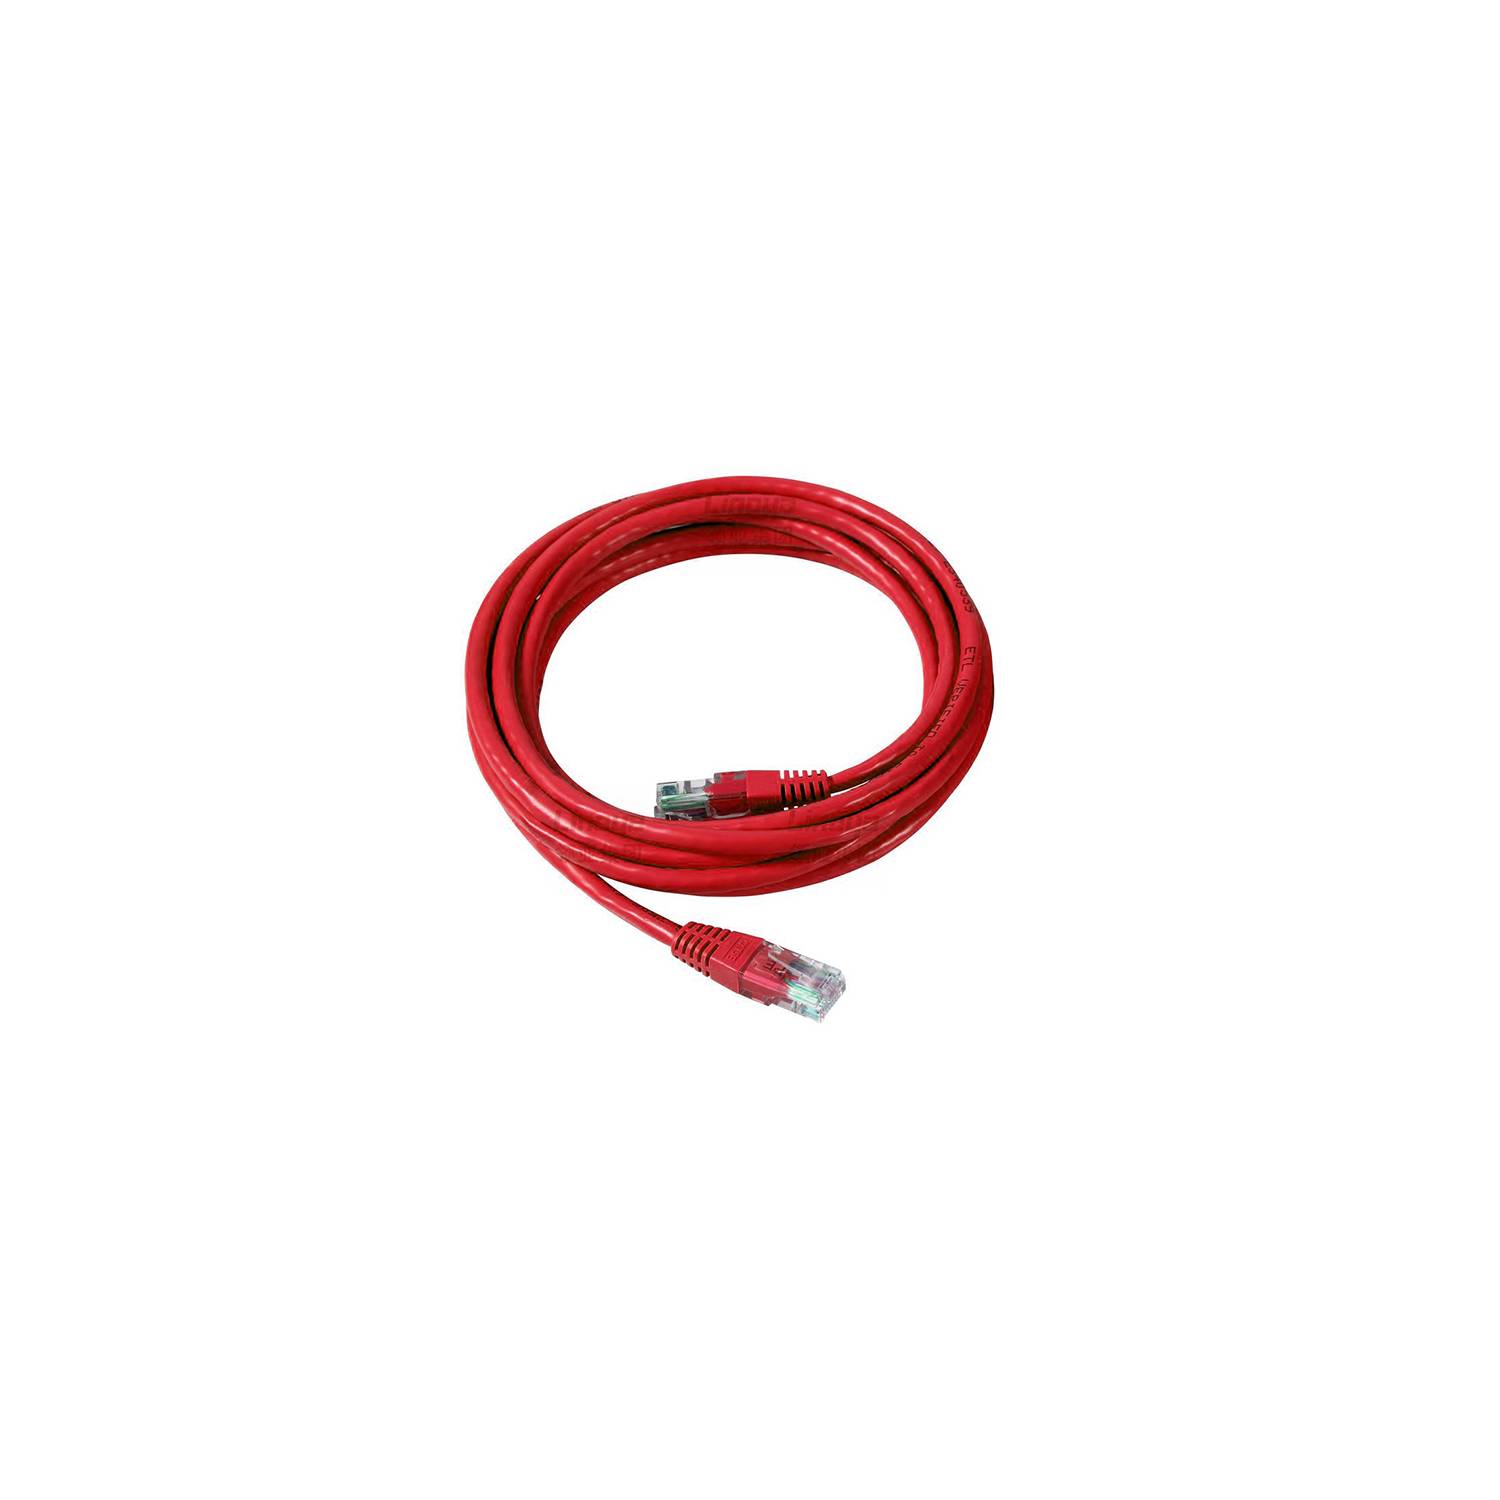 Cable de Red Utp Cat 6 Nuevo Sellado Testeado Rj45 10 Metros